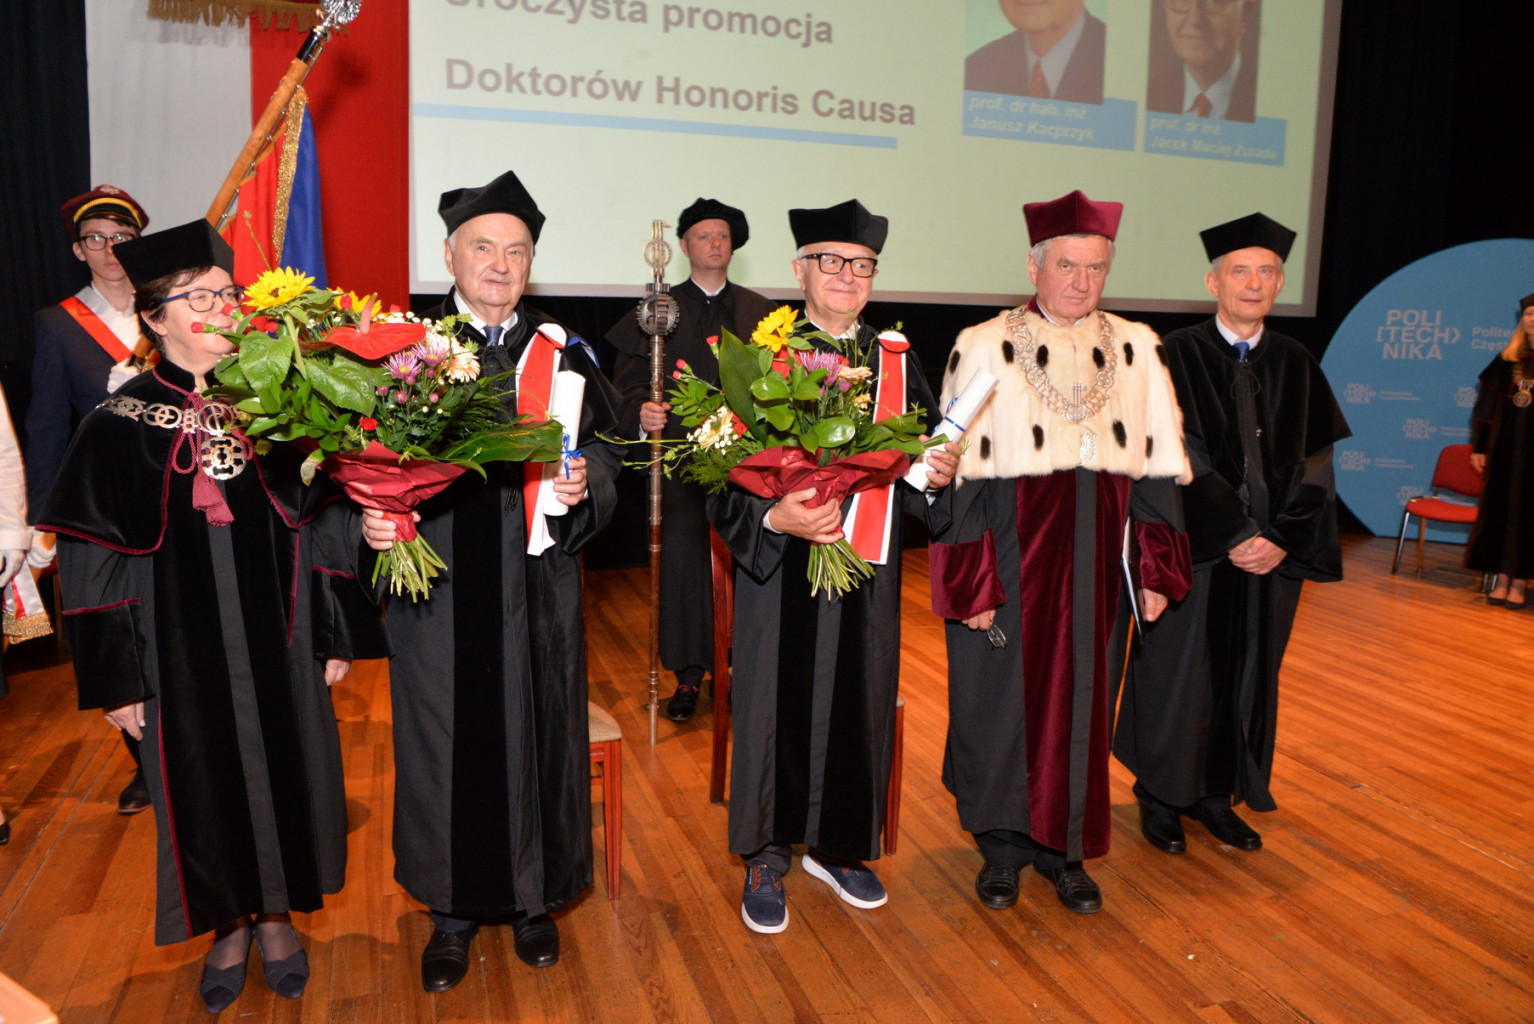 Dwaj profesorowie z tytułami doktora honoris causa Politechniki Częstochowskiej